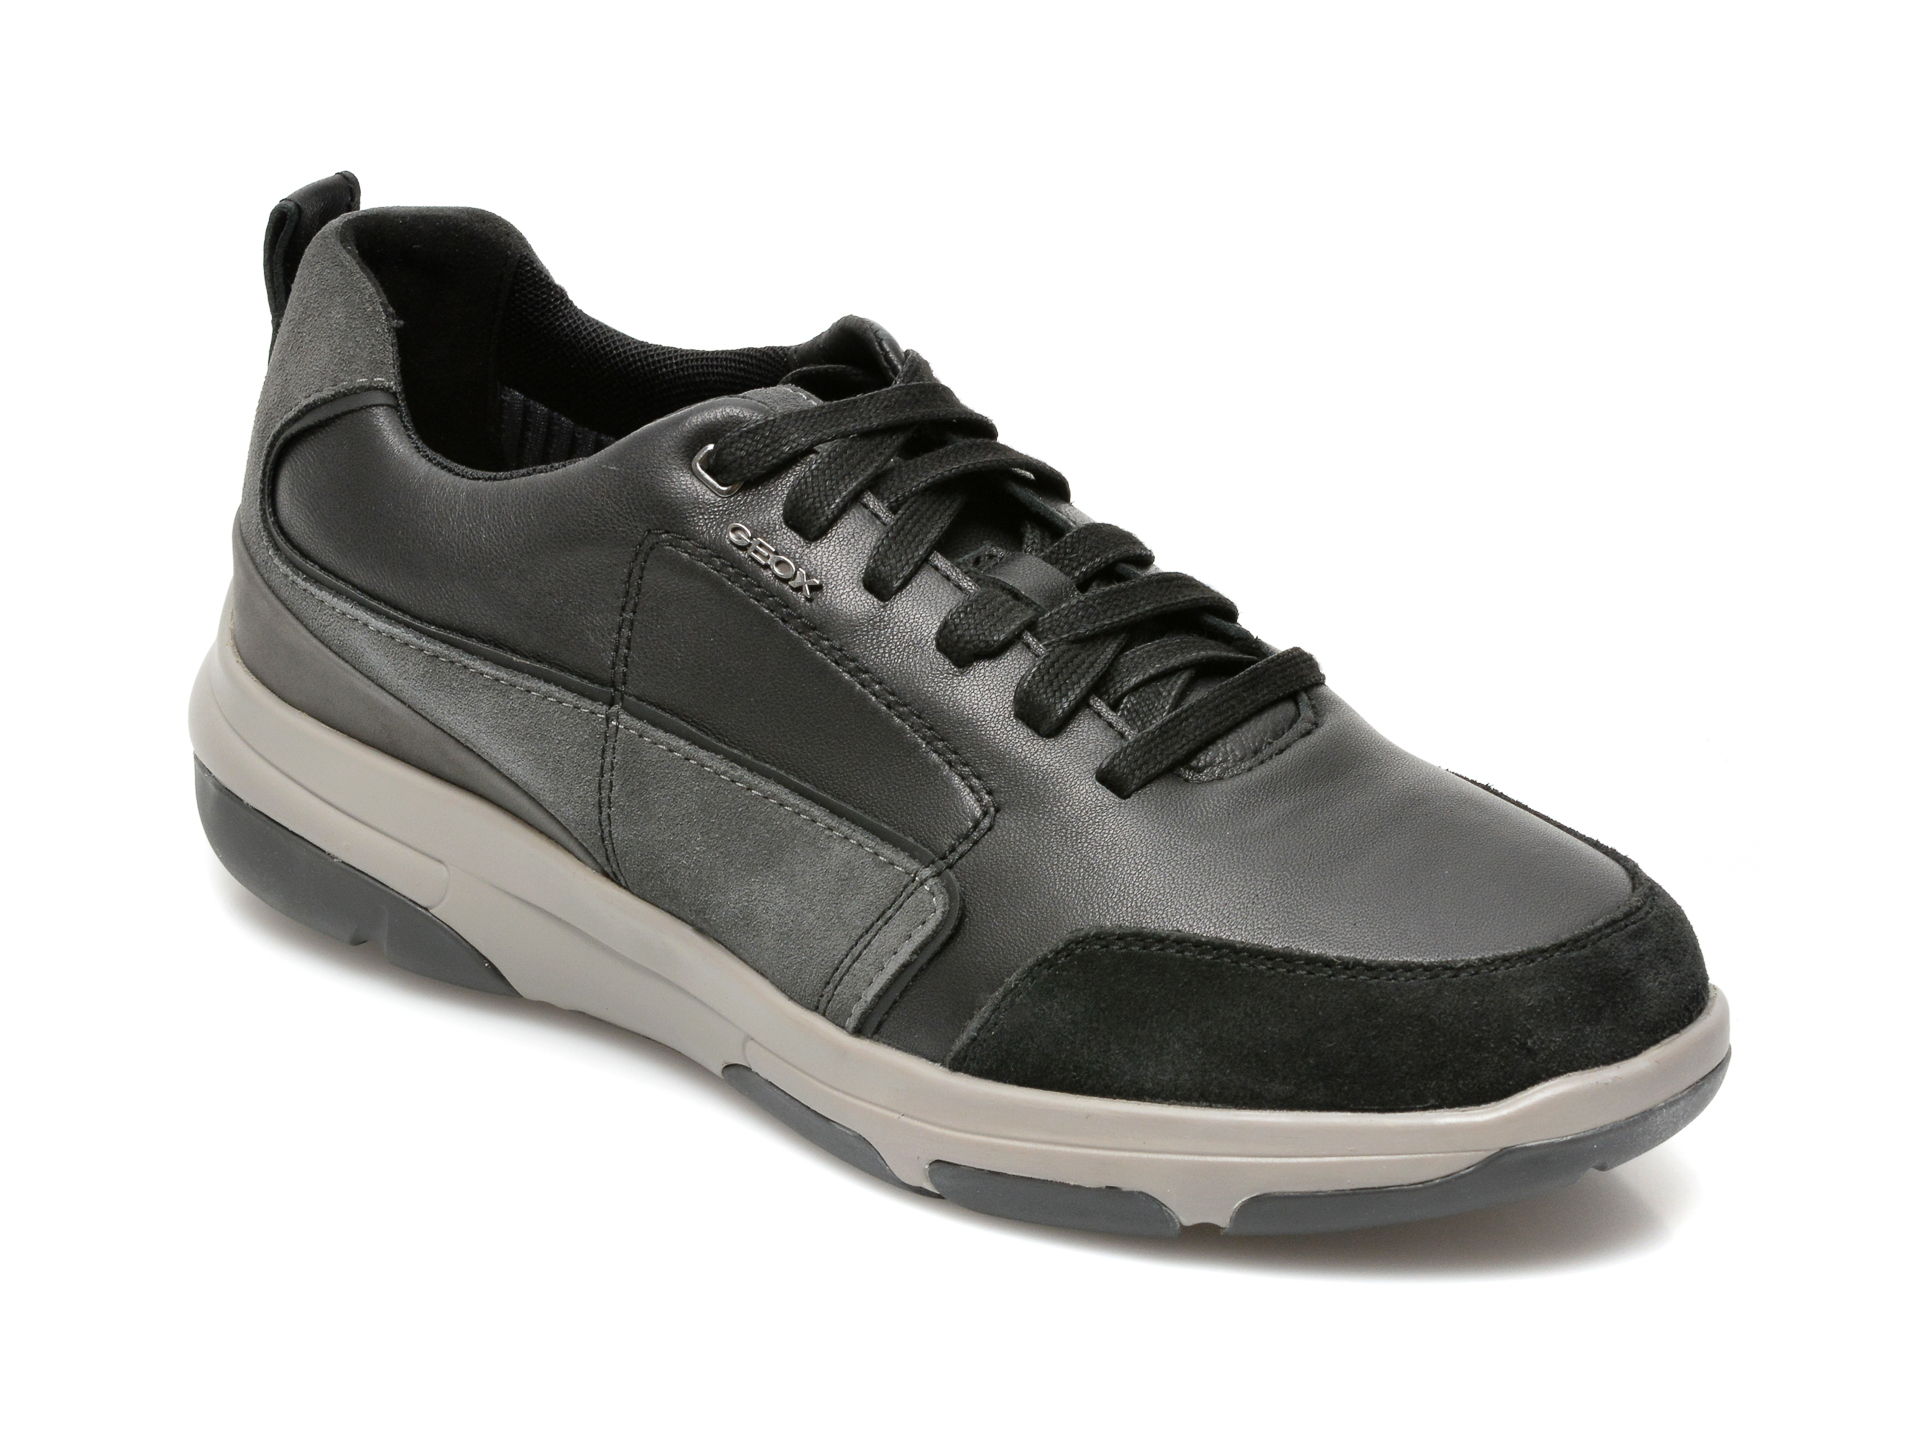 Pantofi GEOX negri, U15C0A, din piele naturala Geox imagine 2022 reducere